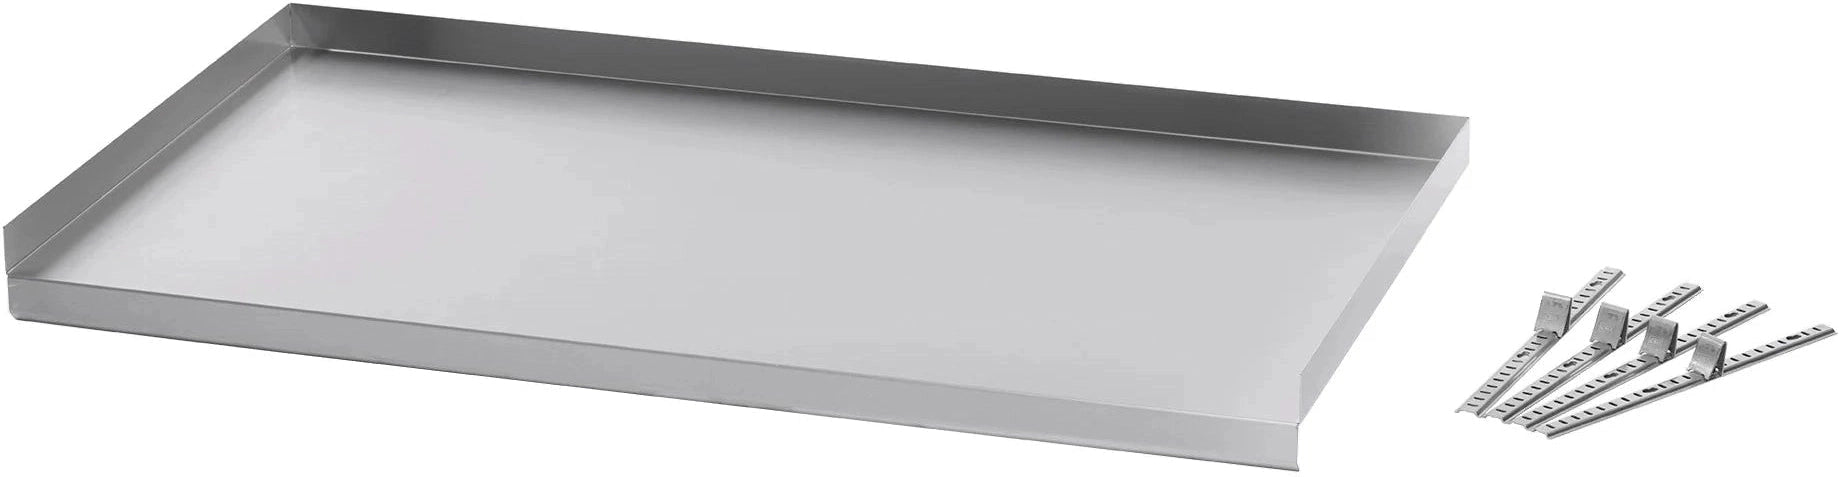 Julien - Rosko 48'' Adjustable Undershelf for Steam Table, Stainless Steel - RO-ACC-STFE-US48